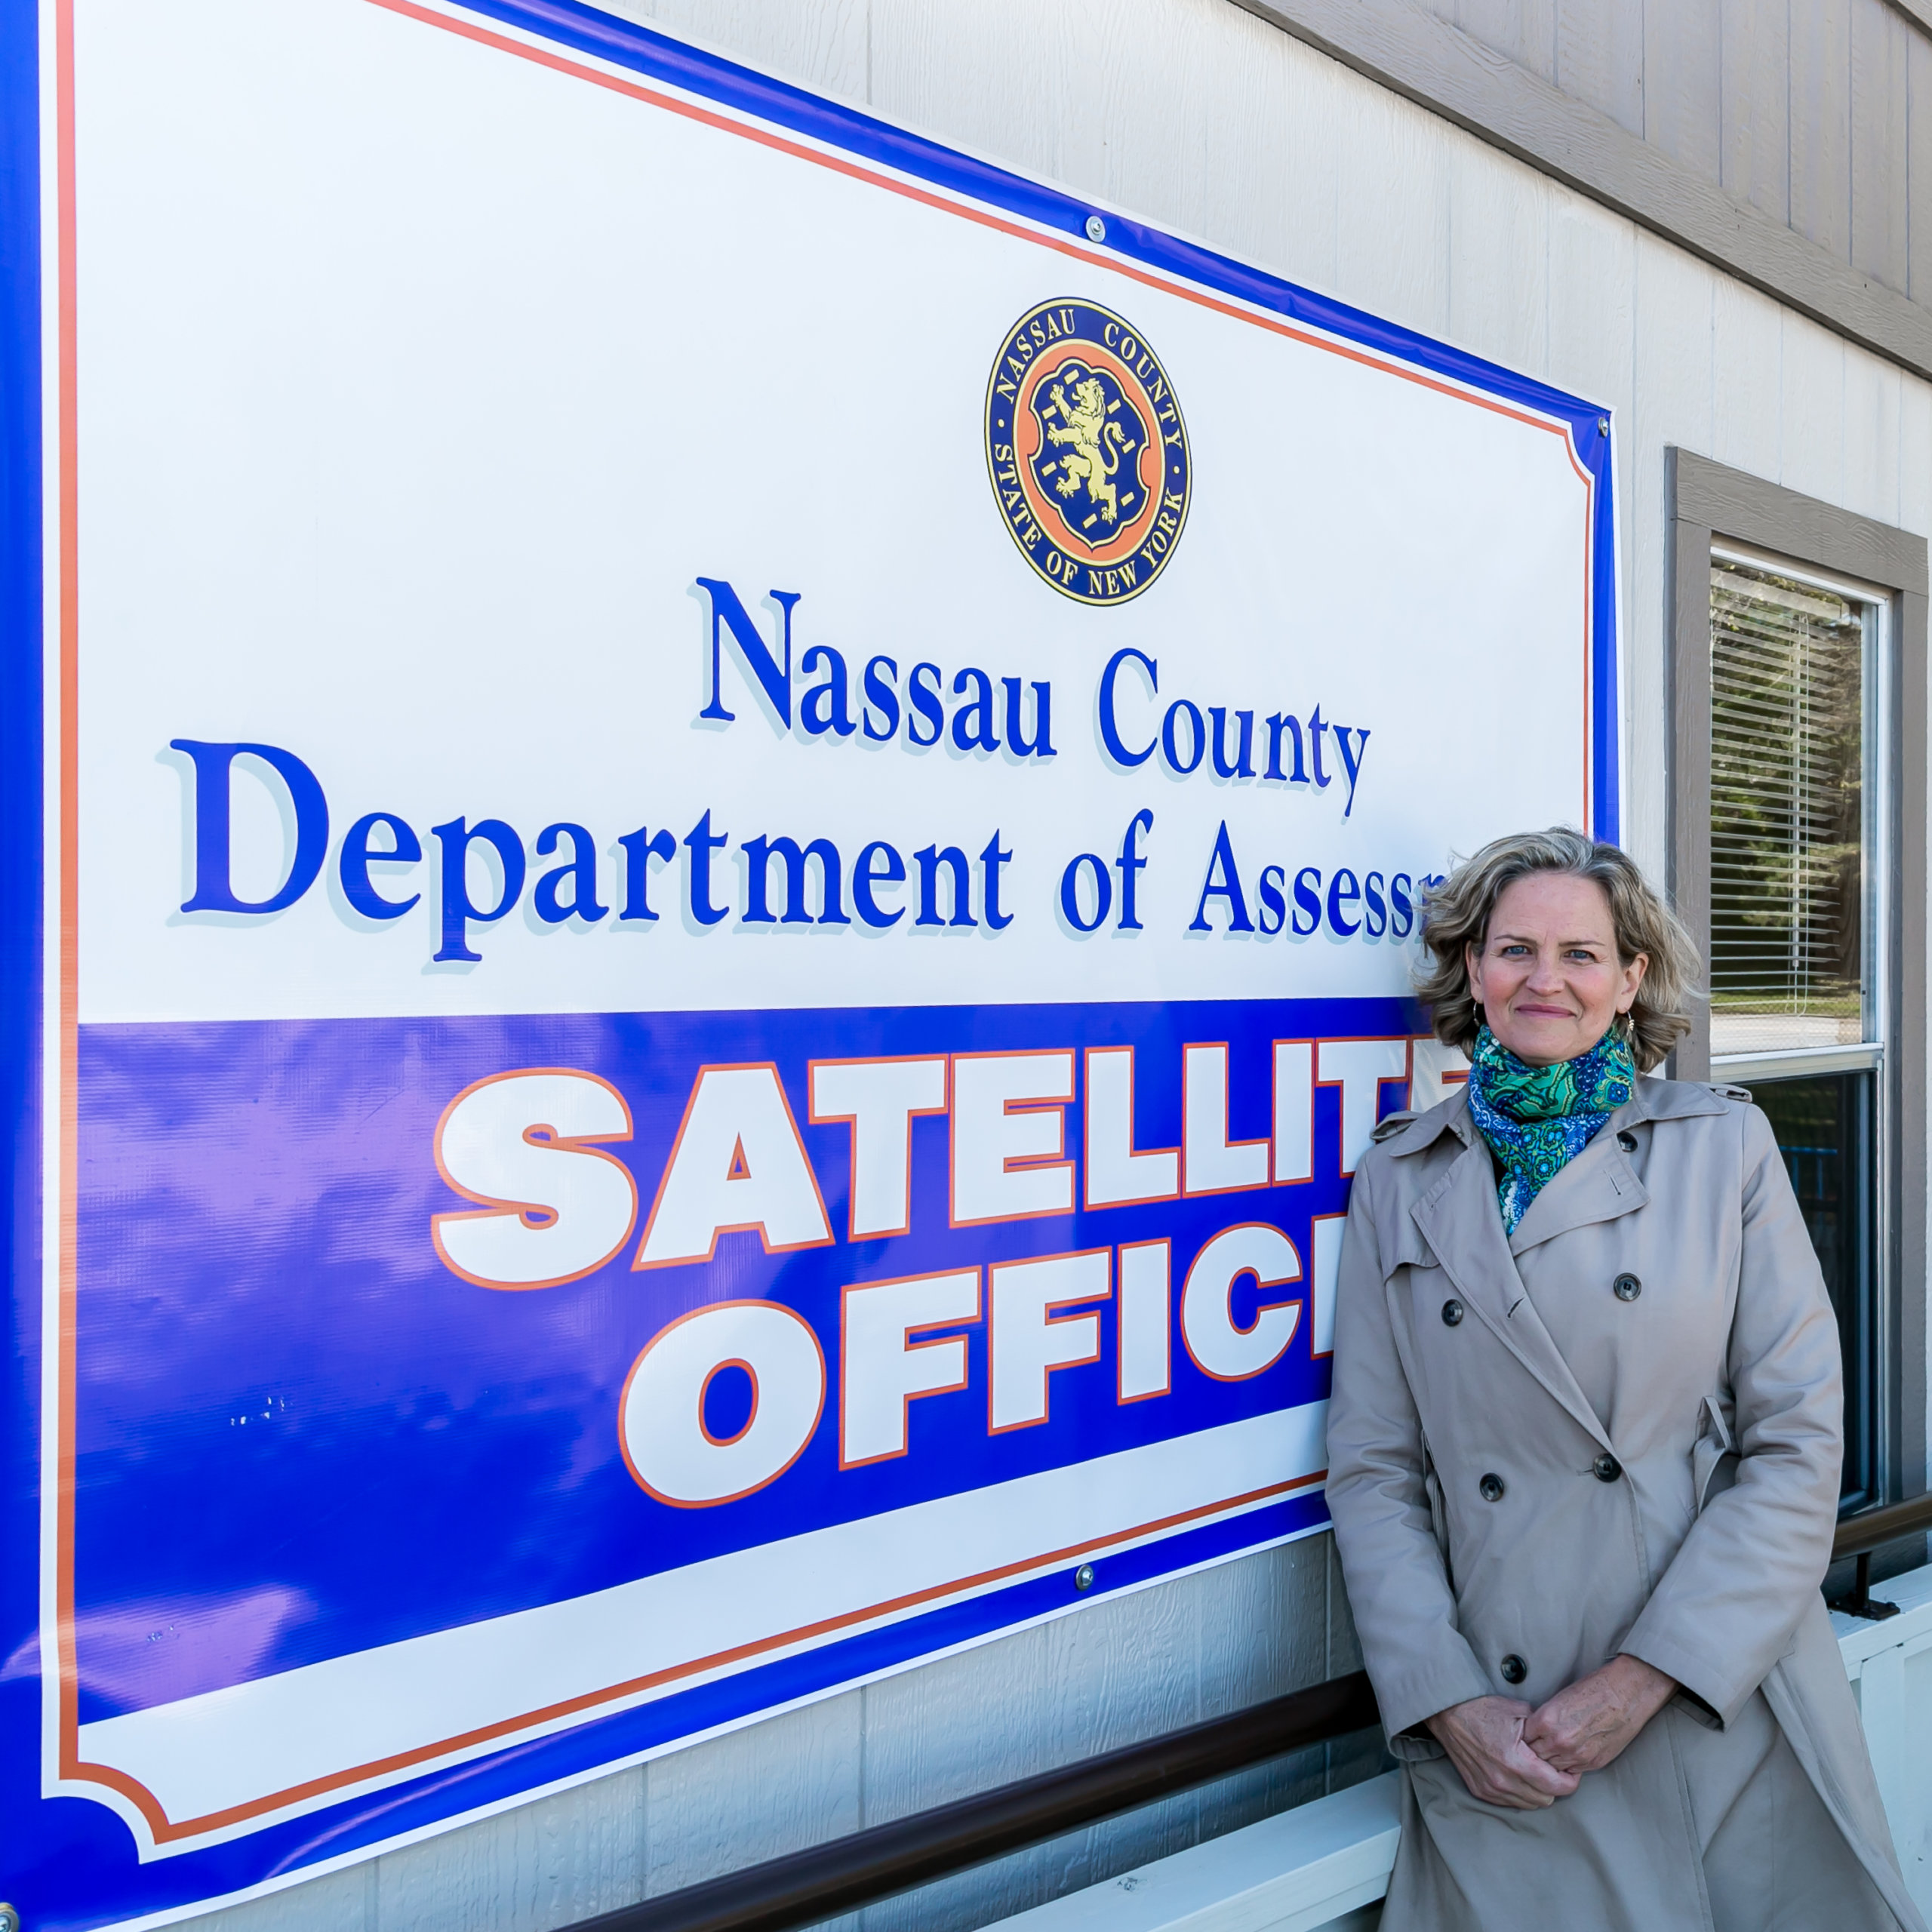 Condado de Nassau abre oficinas móviles para evaluación de propiedades